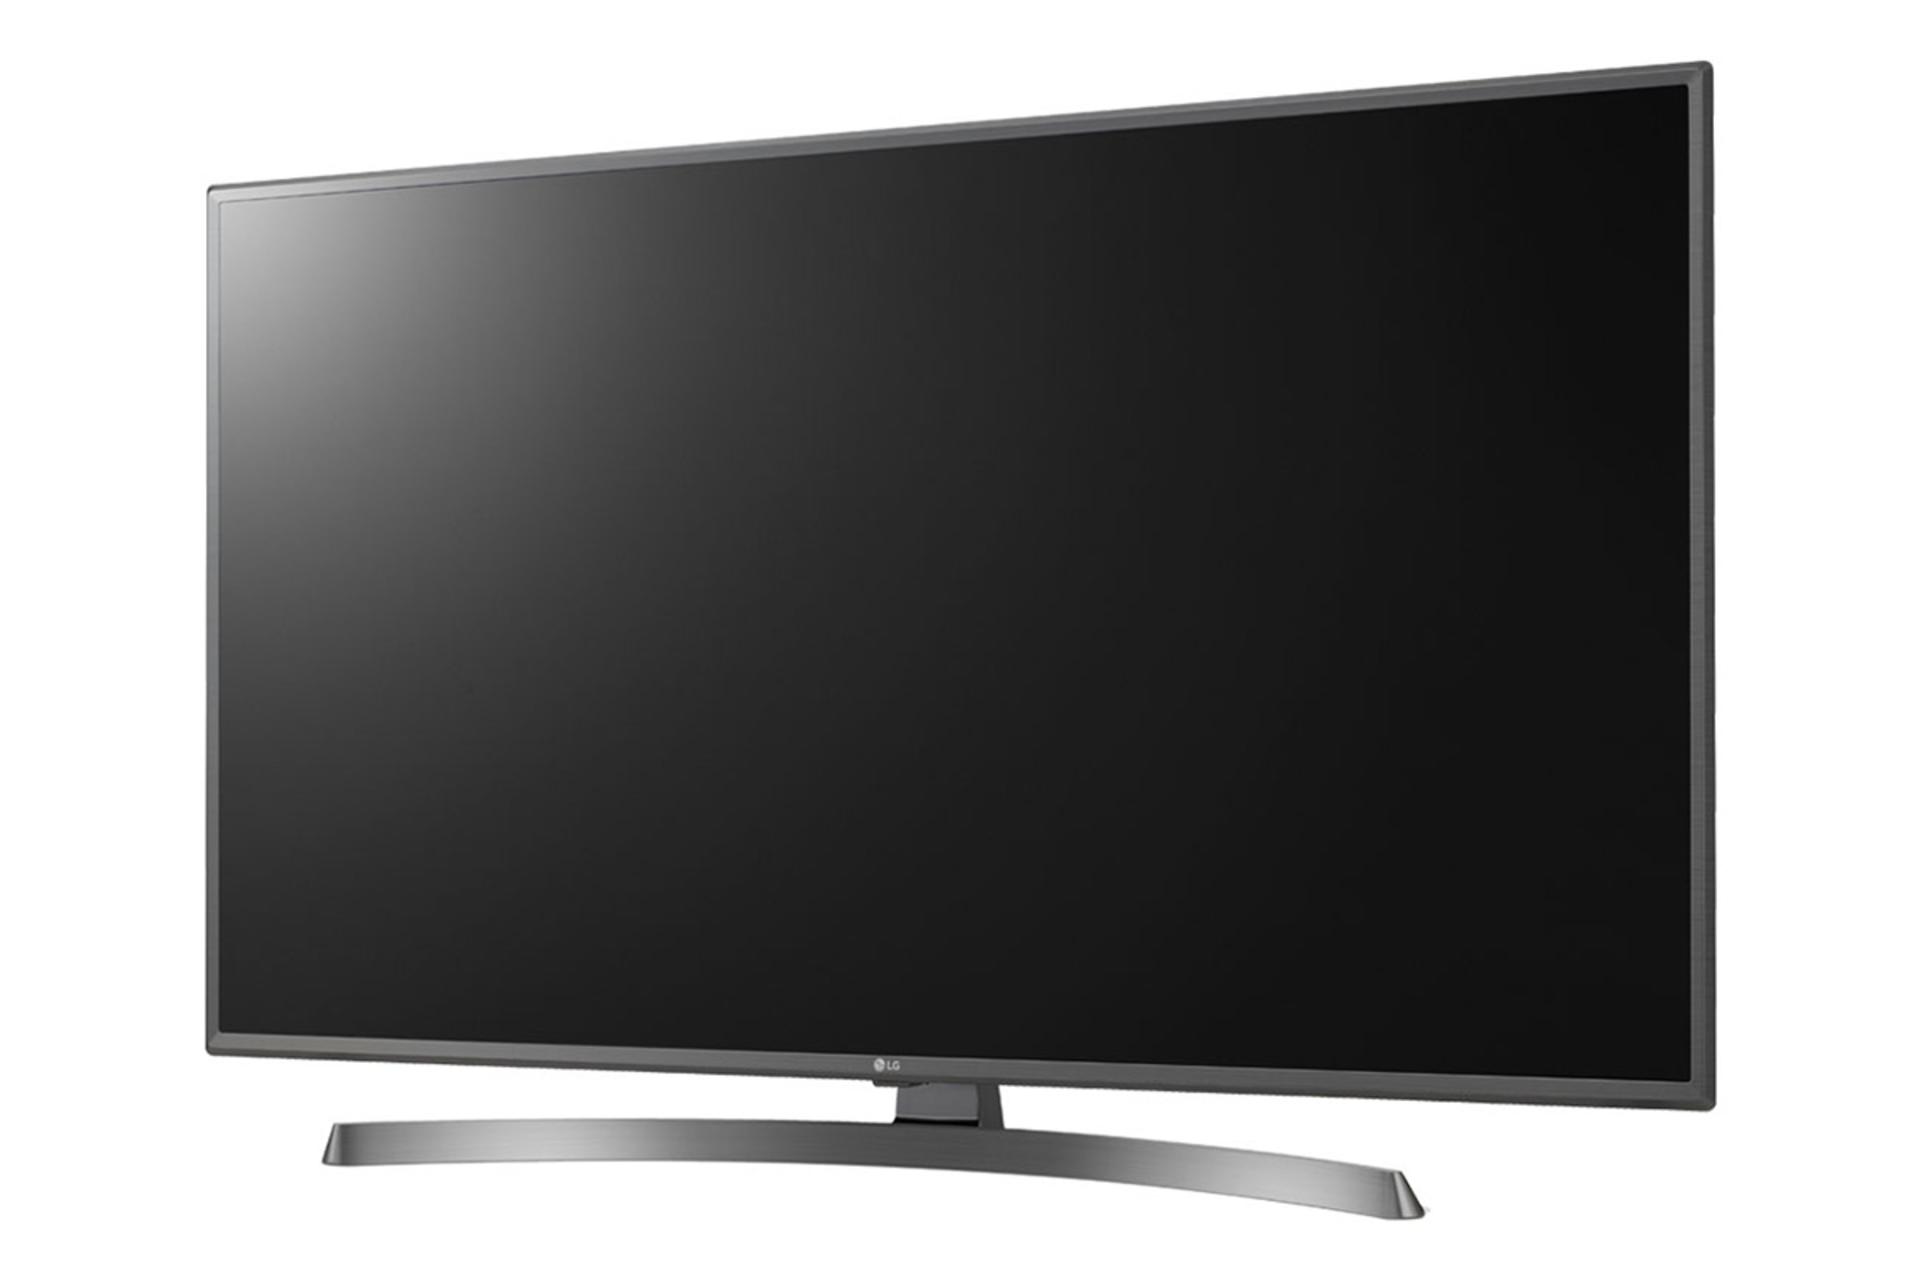 نمای نیمرخ تلویزیون ال جی UK6750 مدل 43 اینچ با صفحه خاموش